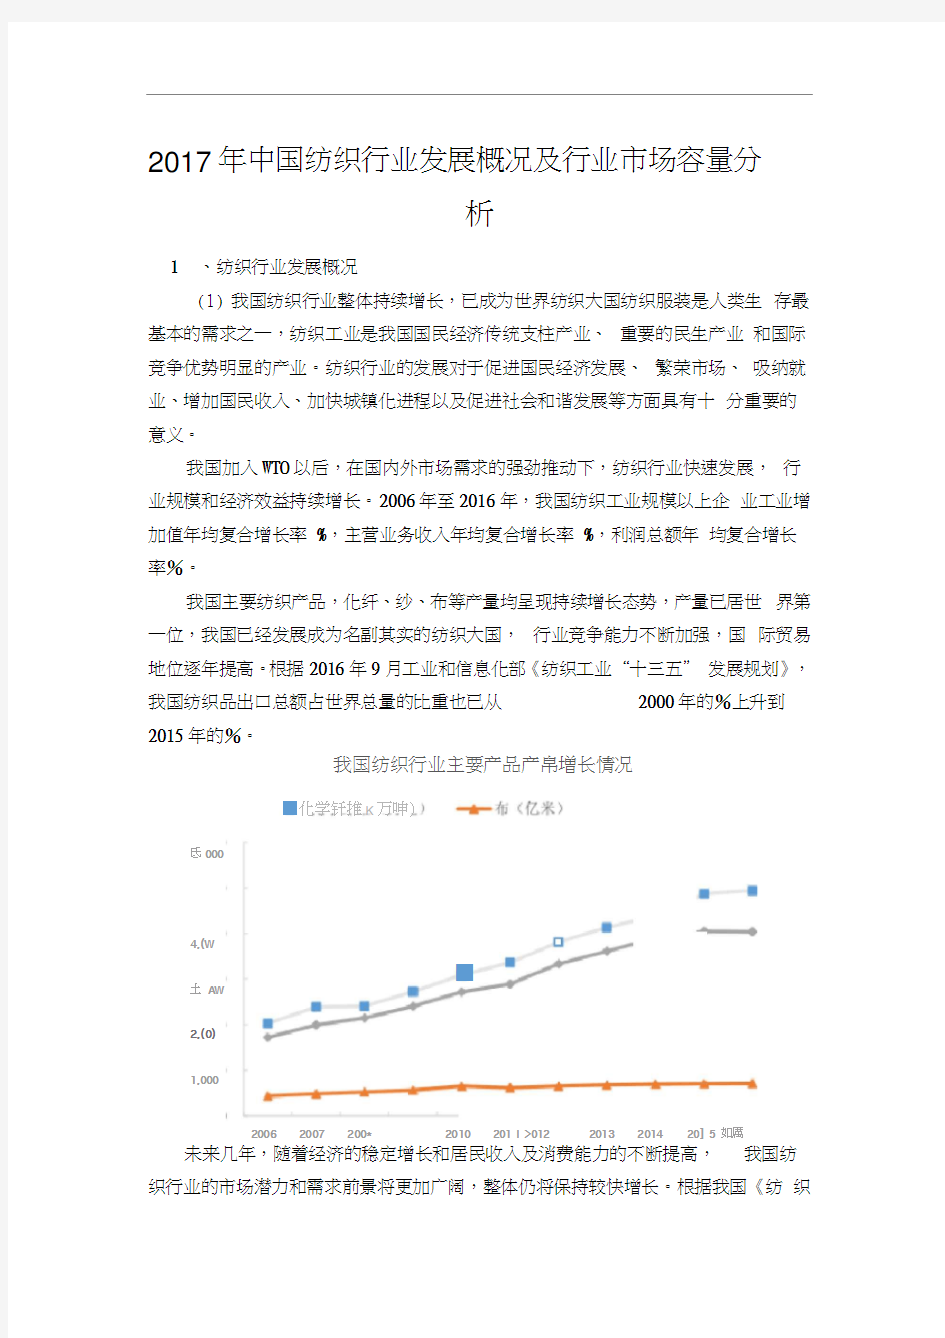 2017年中国纺织行业发展概况及行业市场容量分析